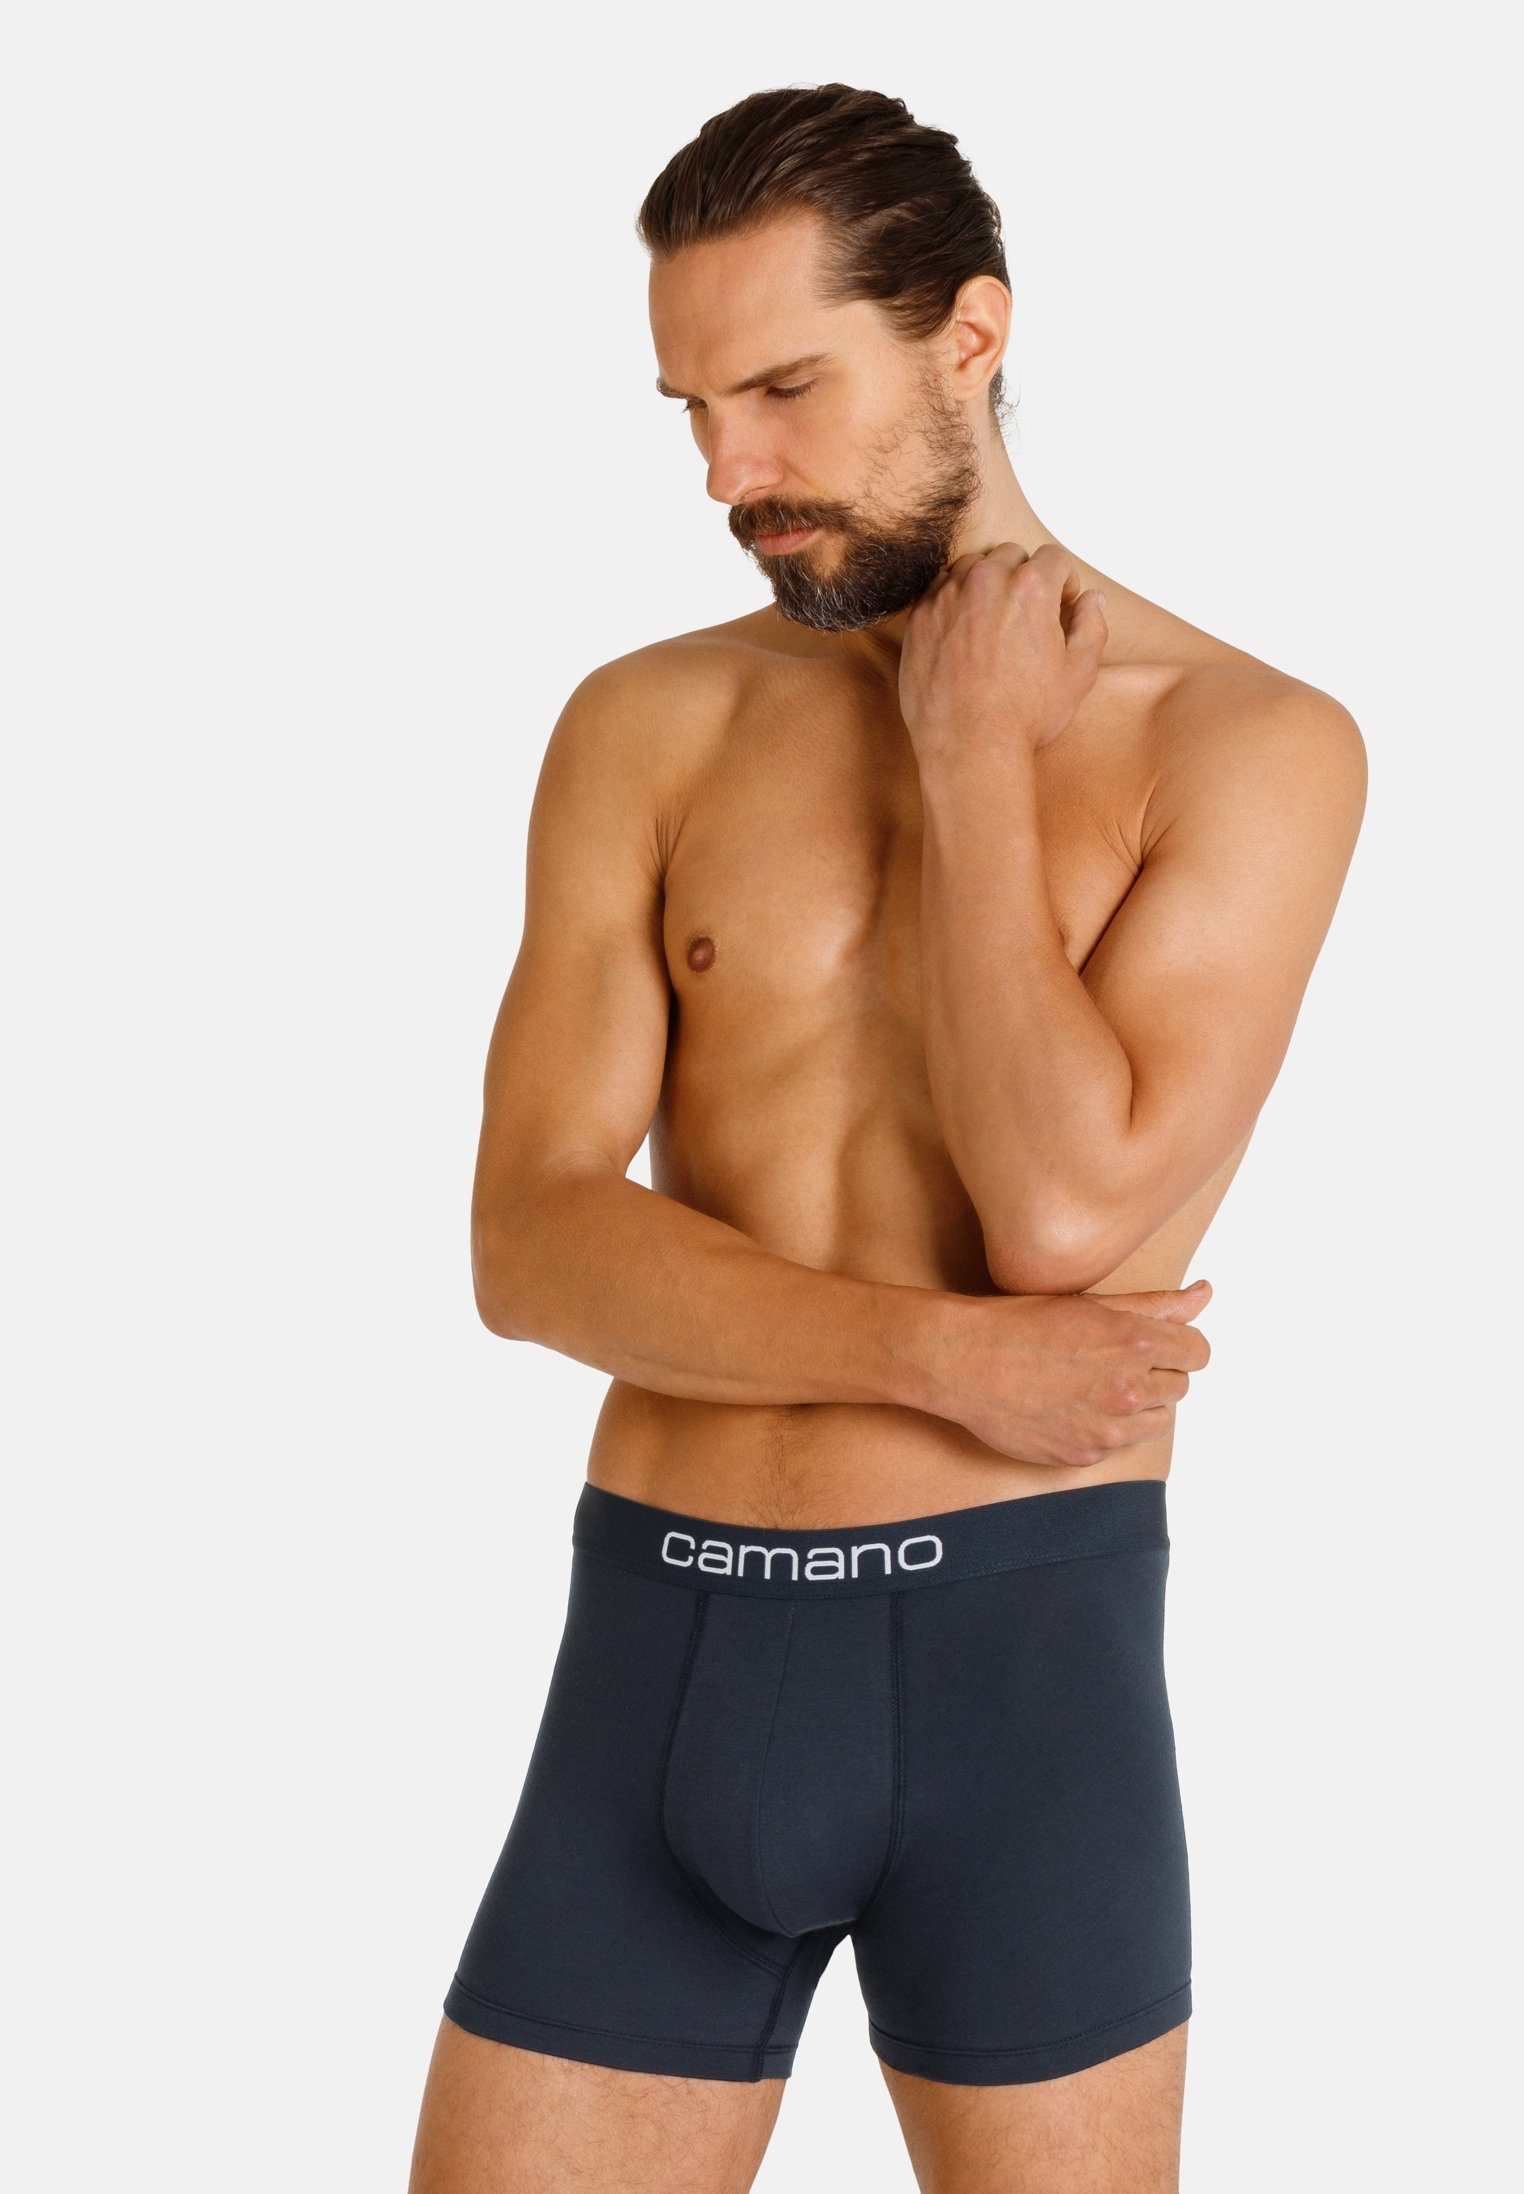 Camano Boxershorts Comfort mit nachhaltigerer Baumwolle (BCI) (6-St) im praktischen 6er-Pack grau, schwarz